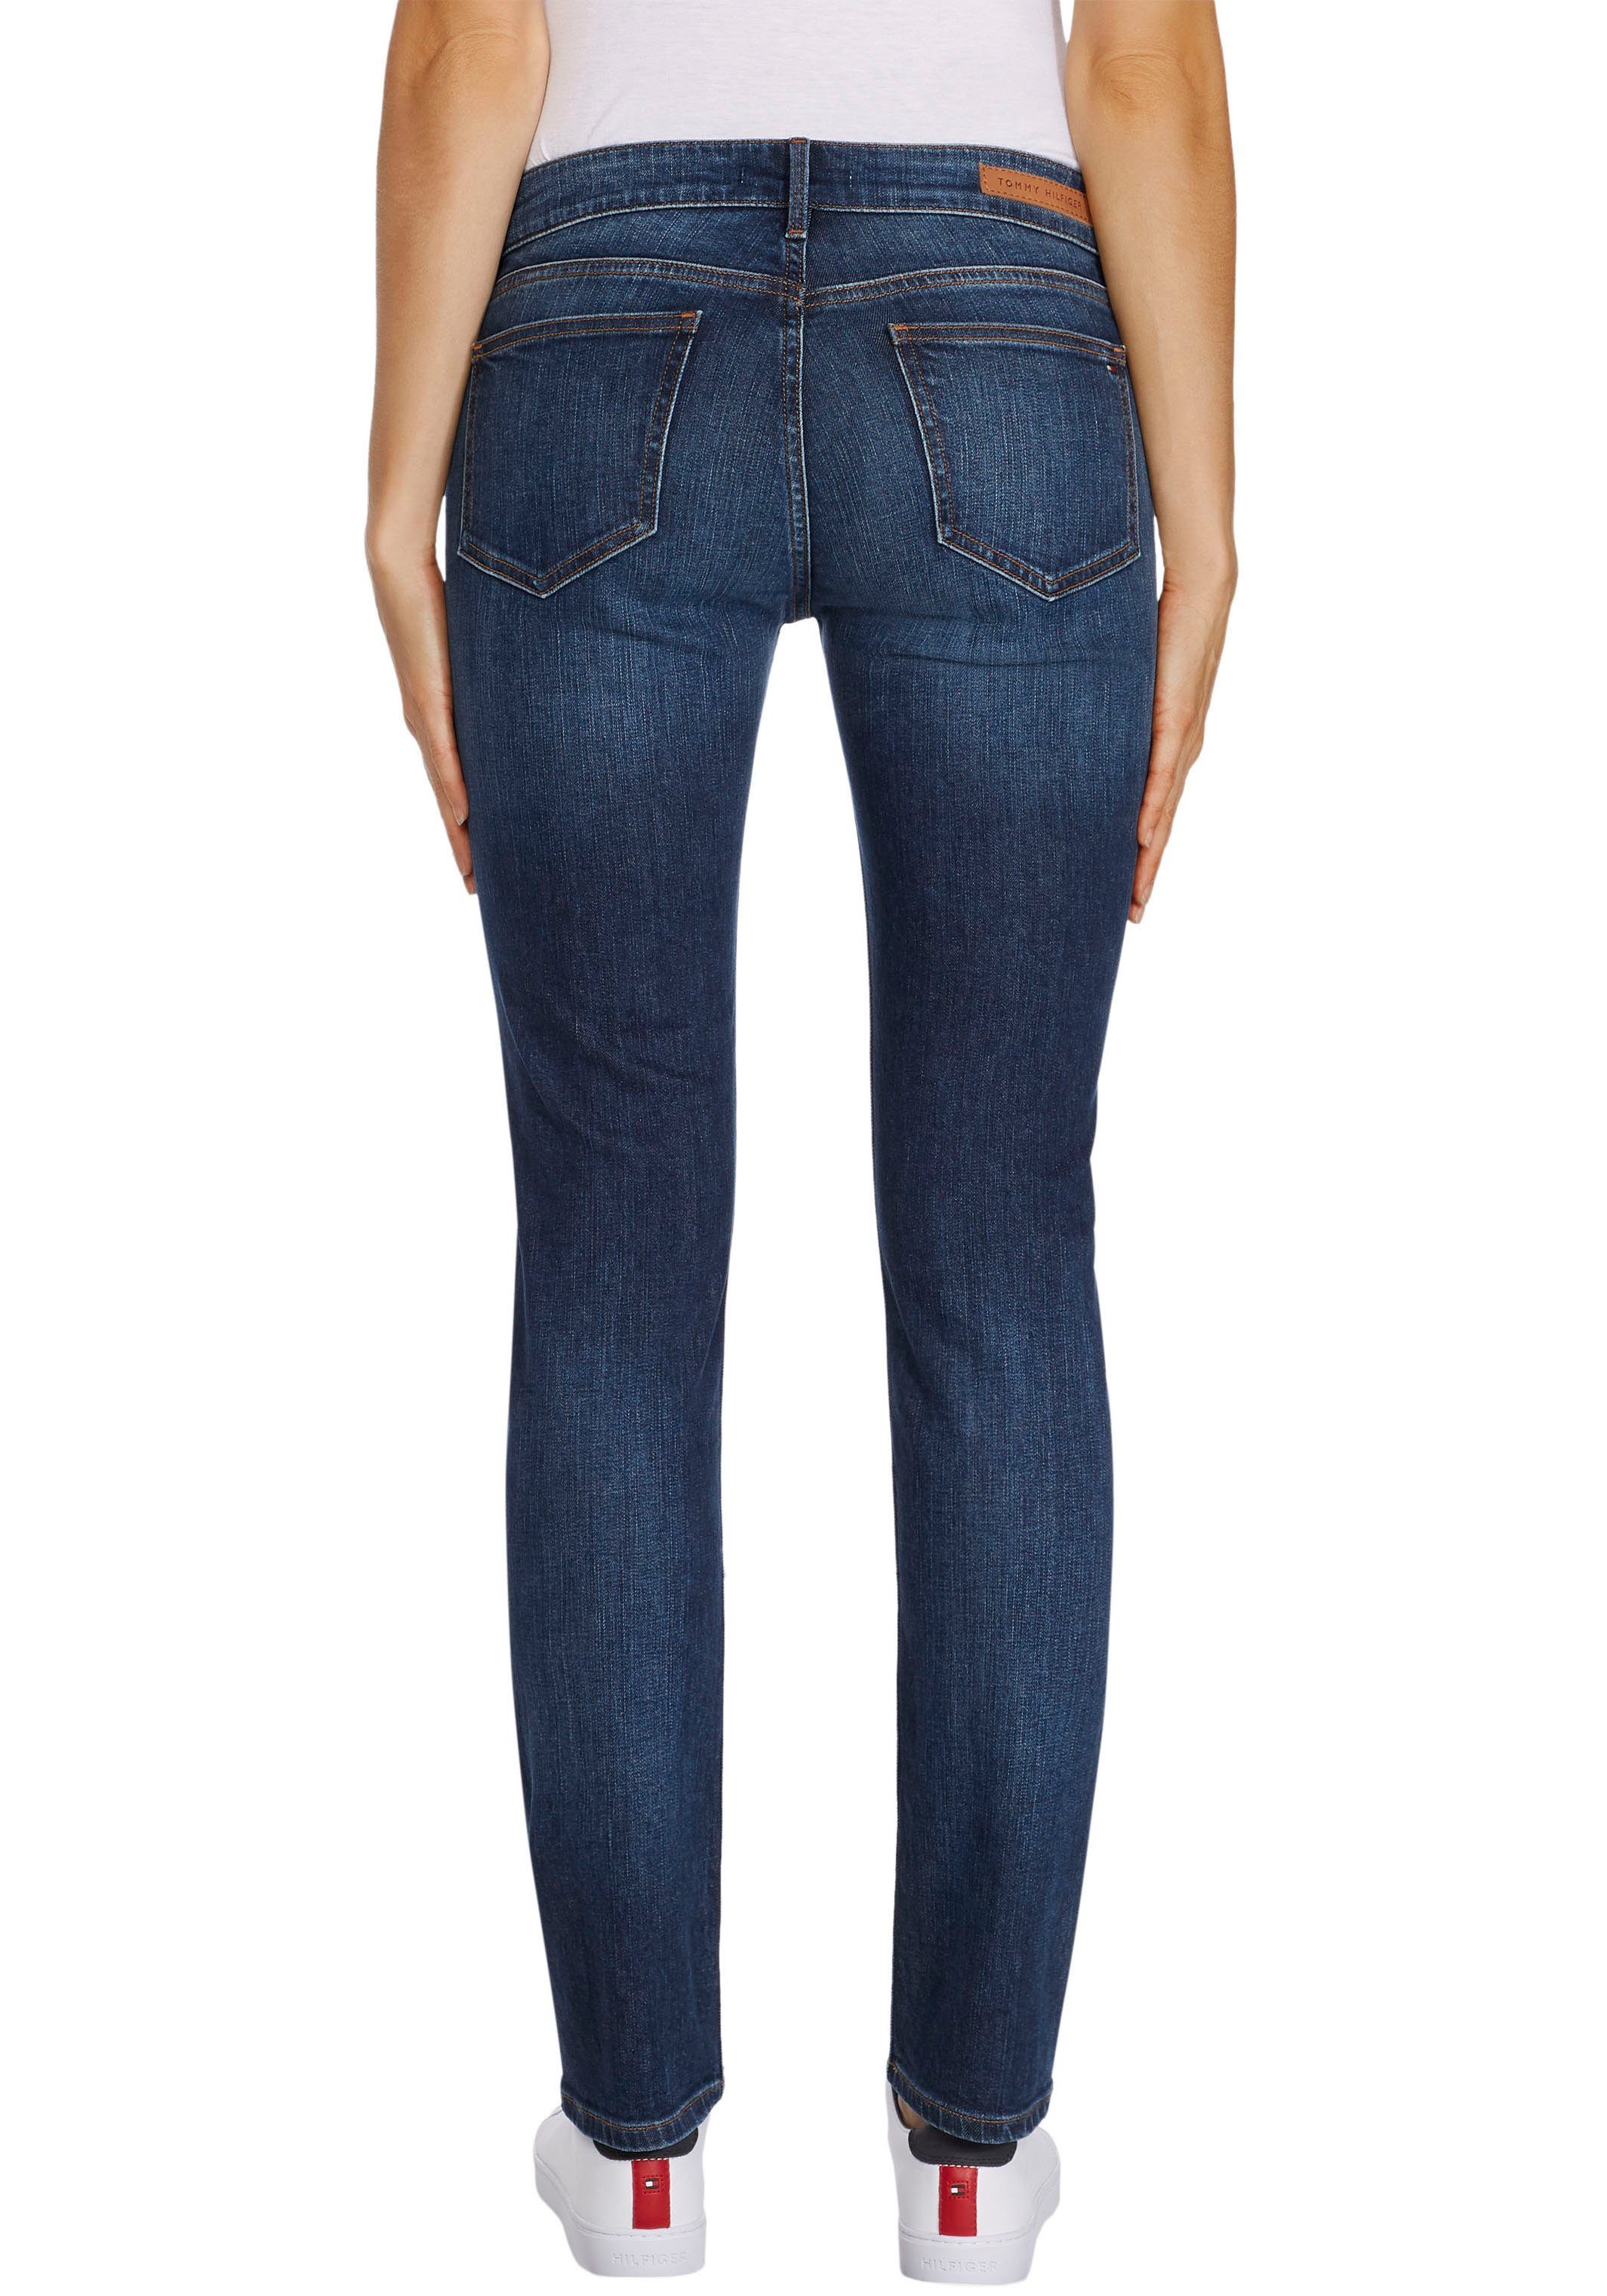 خلاص اختبار دربفيل فريد tommy hilfiger jeans damen sale -  stoprestremember.com